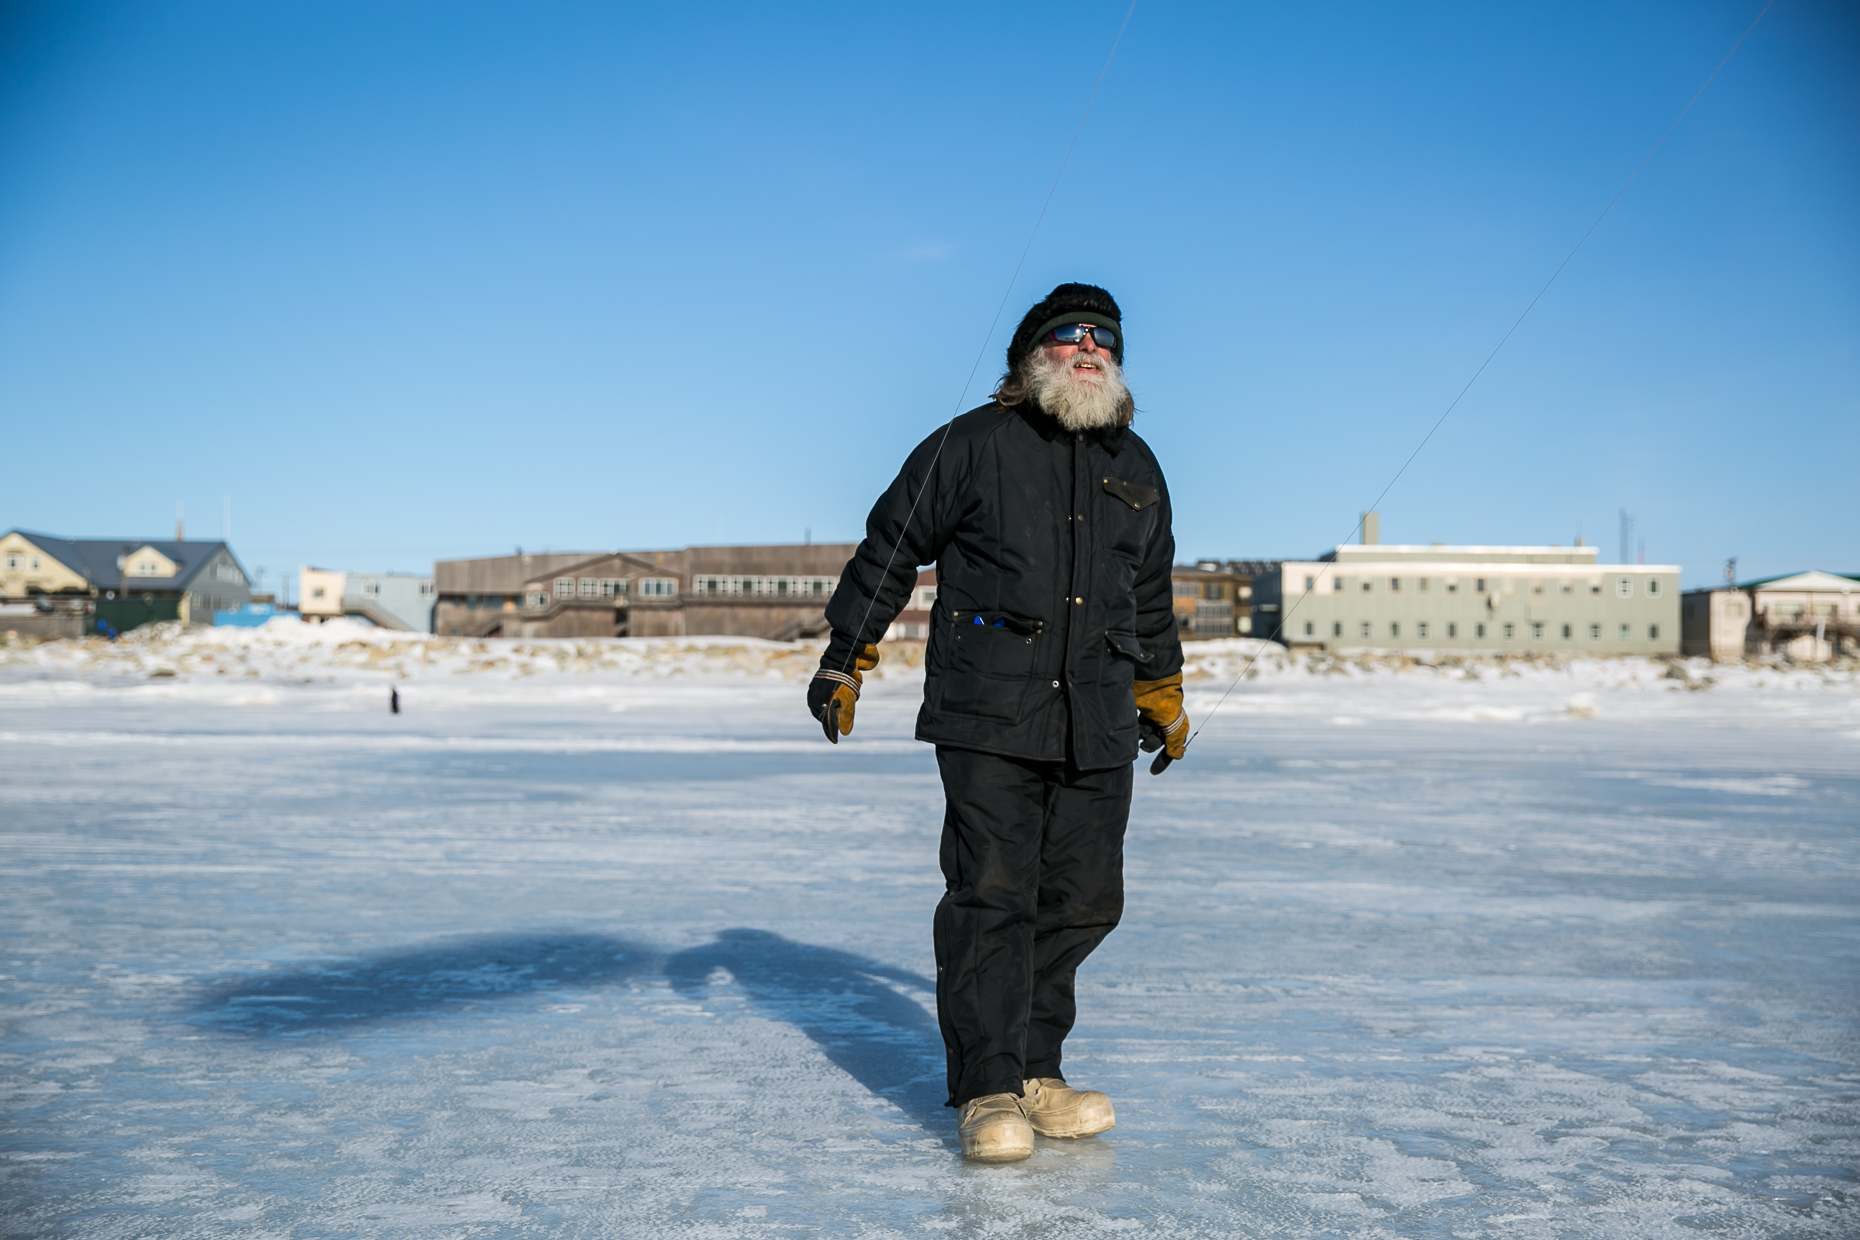 Bering Sea Nome